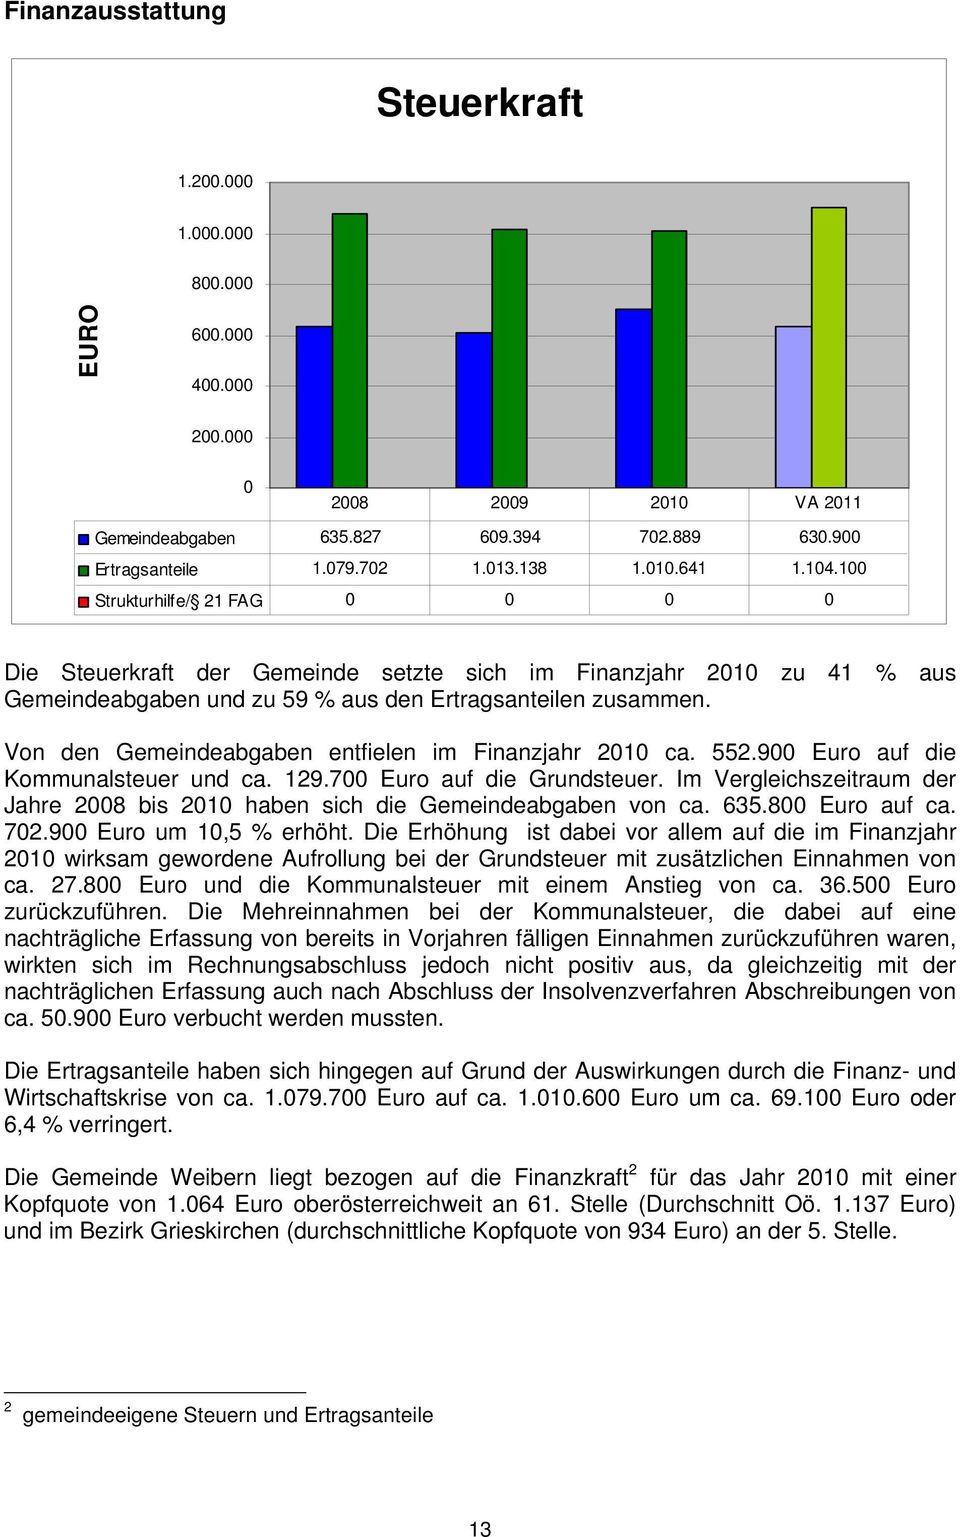 Von den Gemeindeabgaben entfielen im Finanzjahr 2010 ca. 552.900 Euro auf die Kommunalsteuer und ca. 129.700 Euro auf die Grundsteuer.